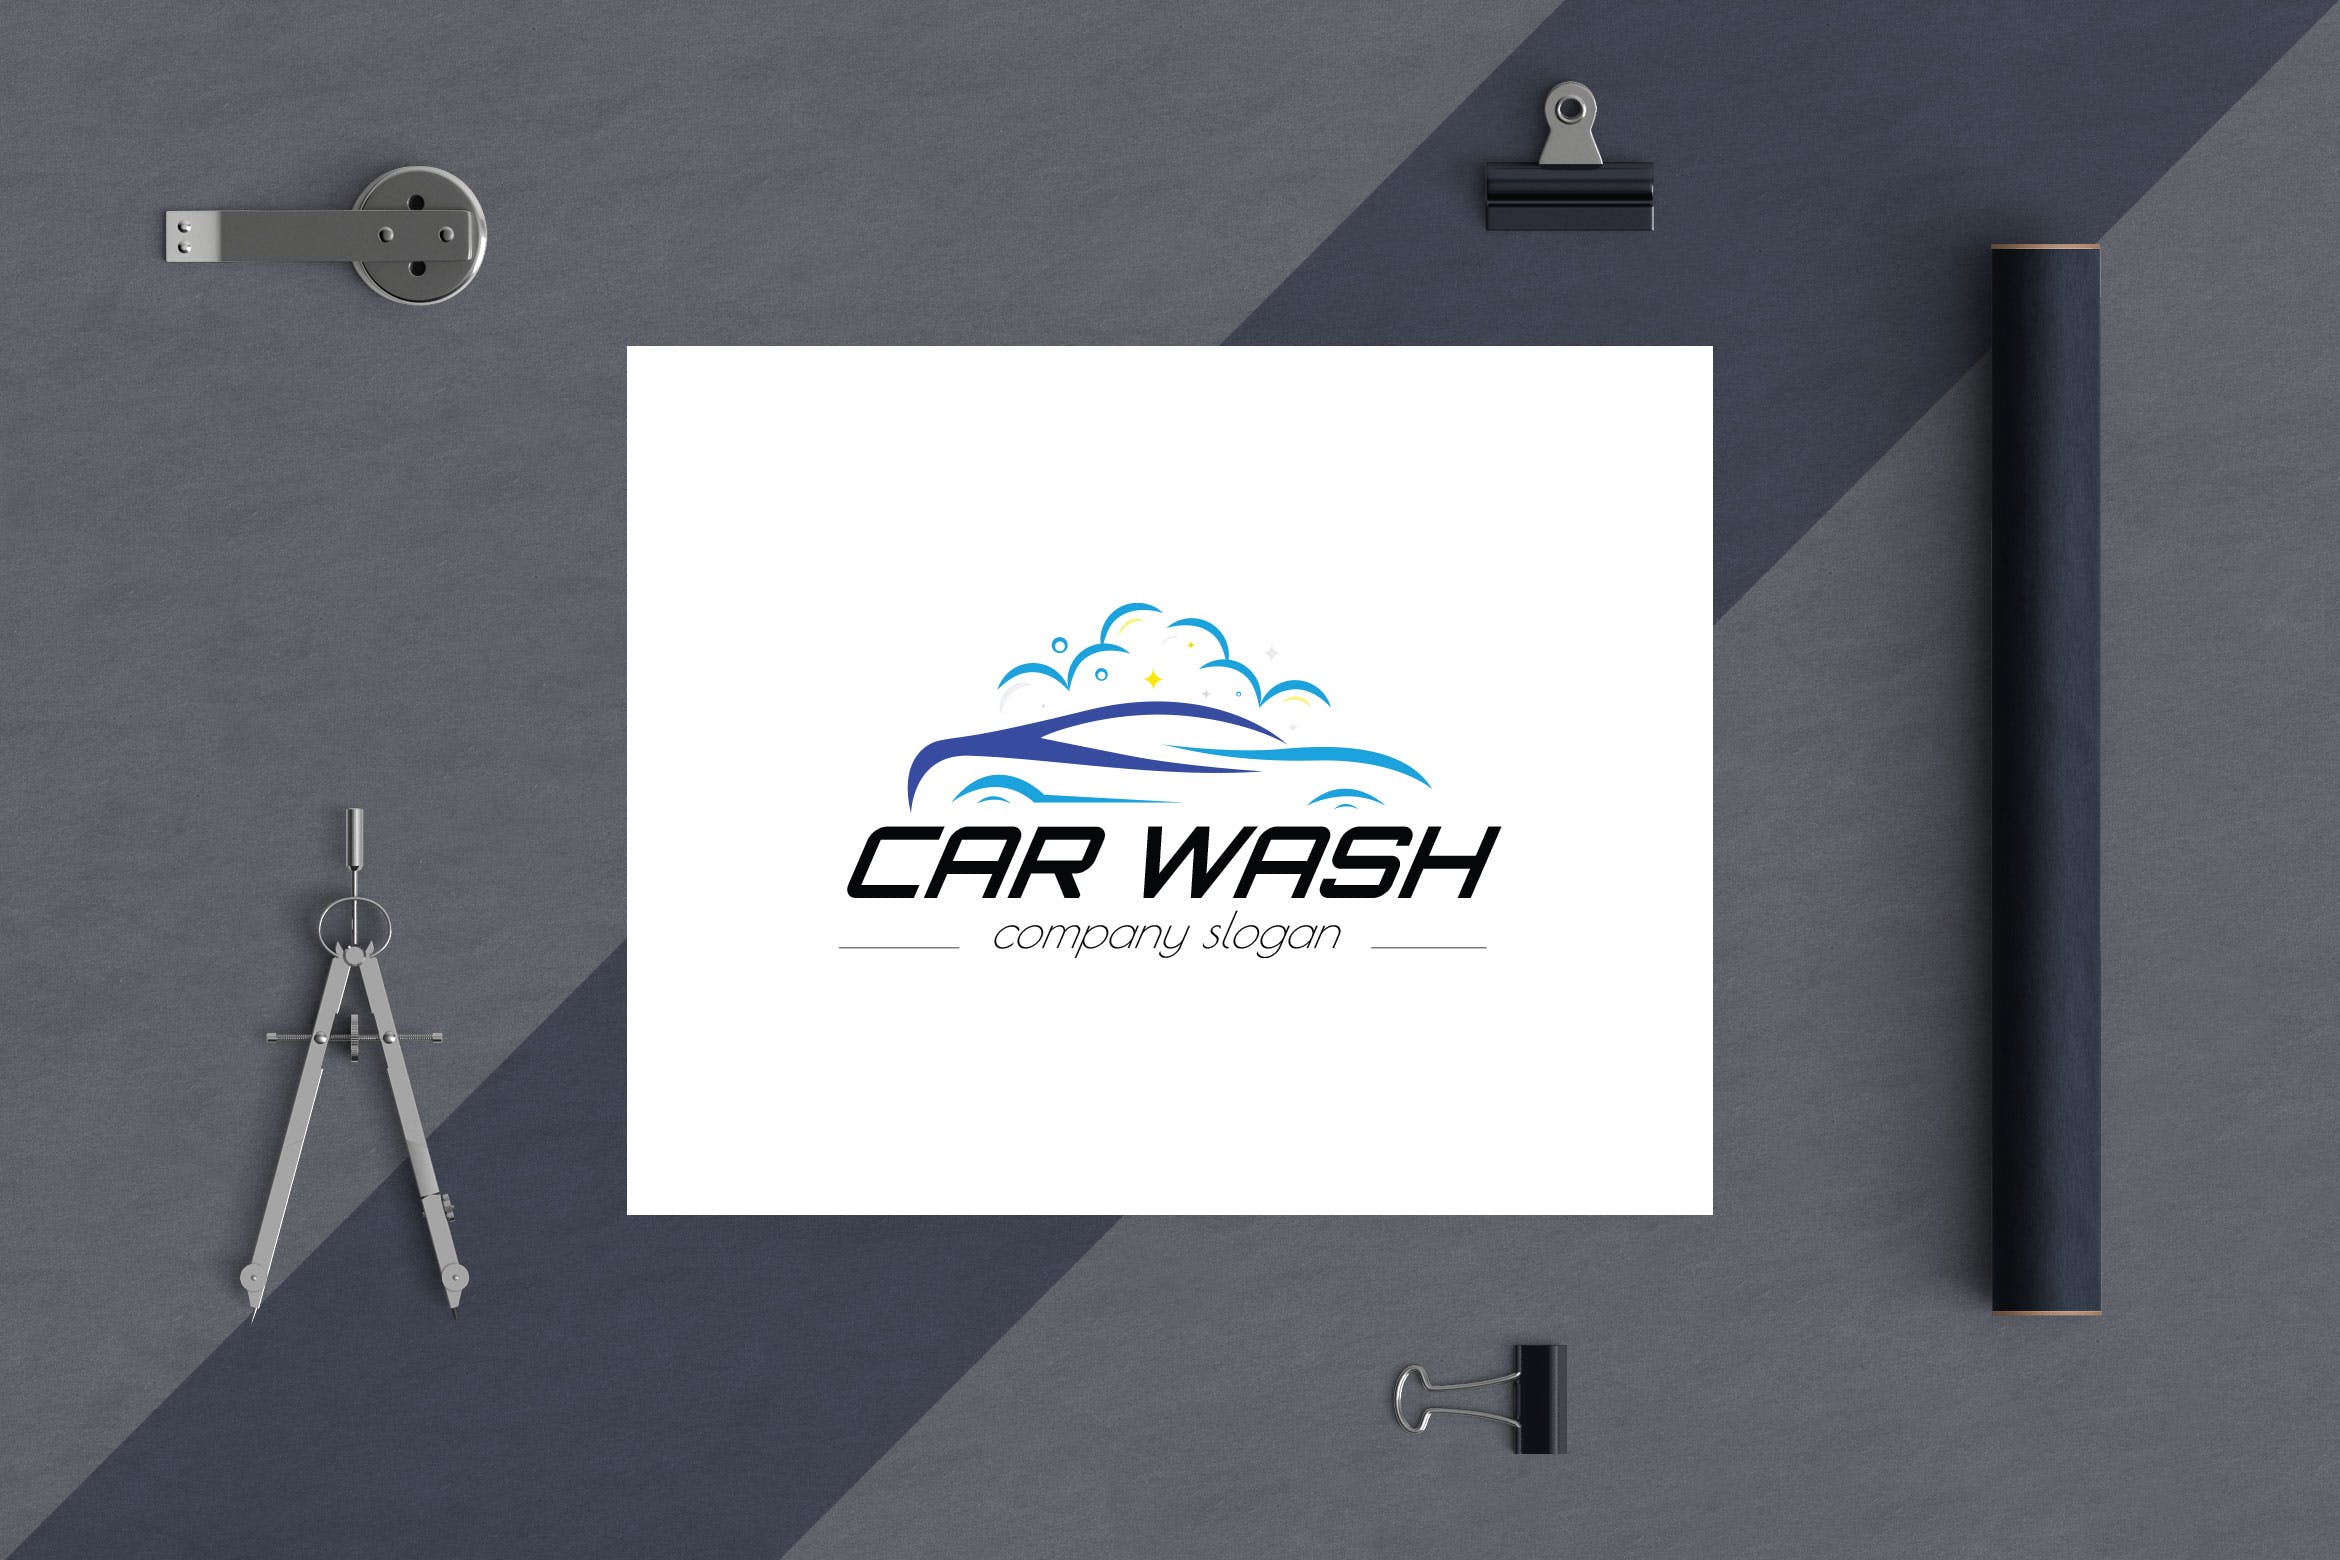 洗车店品牌Logo设计素材库精选模板 Car Wash Business Logo Template插图